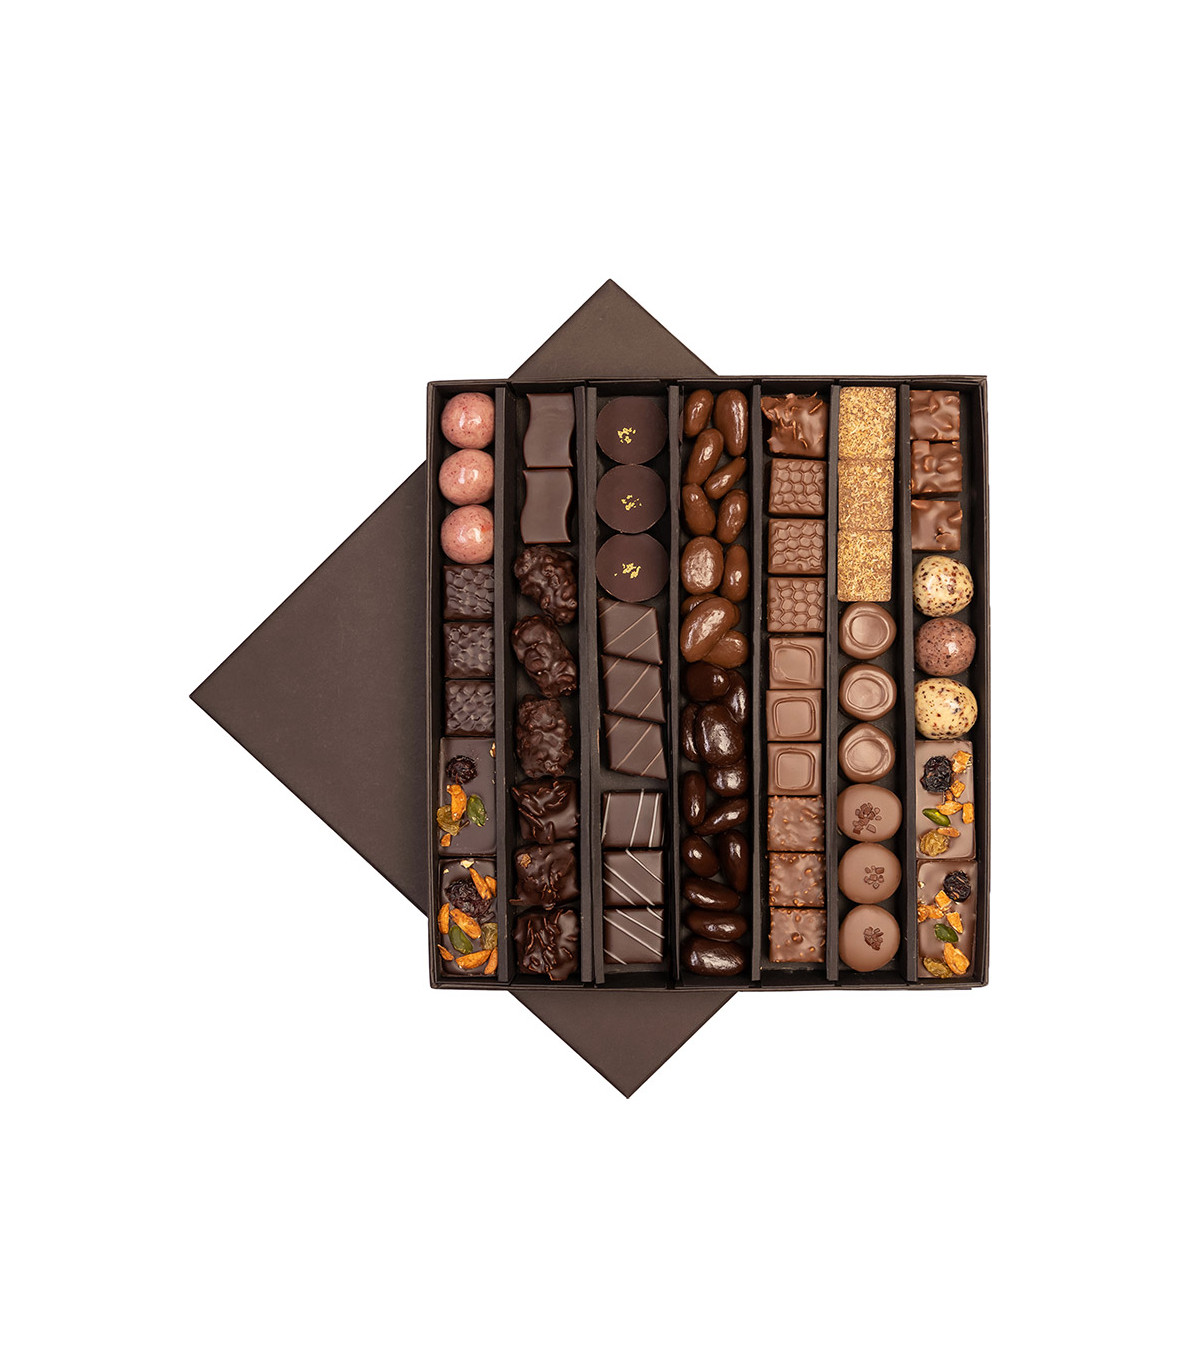 Coffret chocolat et whisky - Boutique de chocolat D'lys couleurs